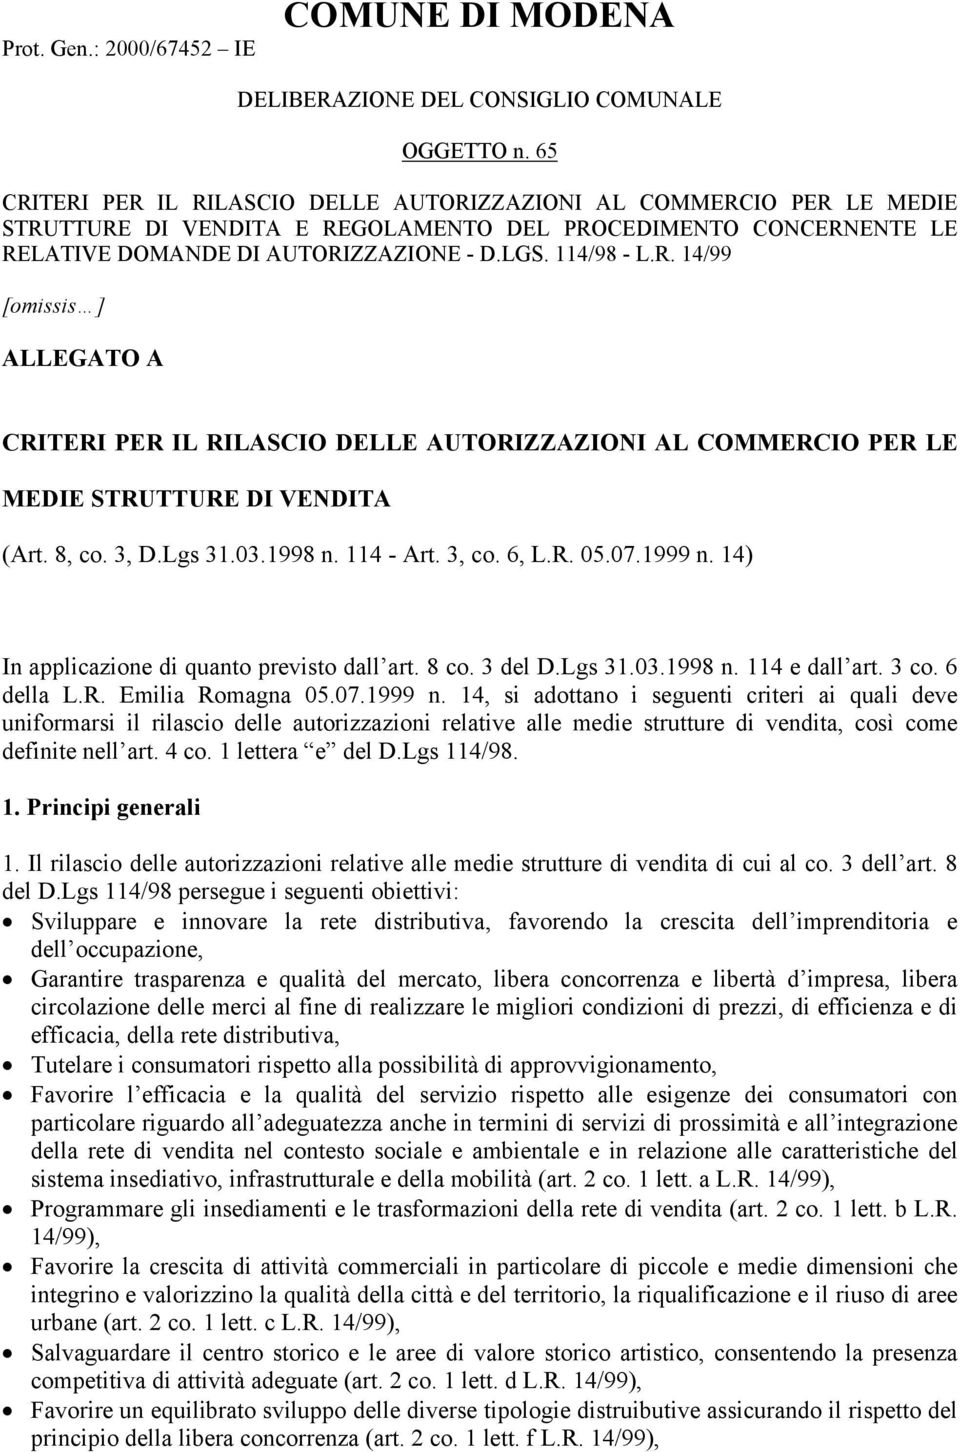 8, co. 3, D.Lgs 31.03.1998 n. 114 - Art. 3, co. 6, L.R. 05.07.1999 n. 14) In applicazione di quanto previsto dall art. 8 co. 3 del D.Lgs 31.03.1998 n. 114 e dall art. 3 co. 6 della L.R. Emilia Romagna 05.